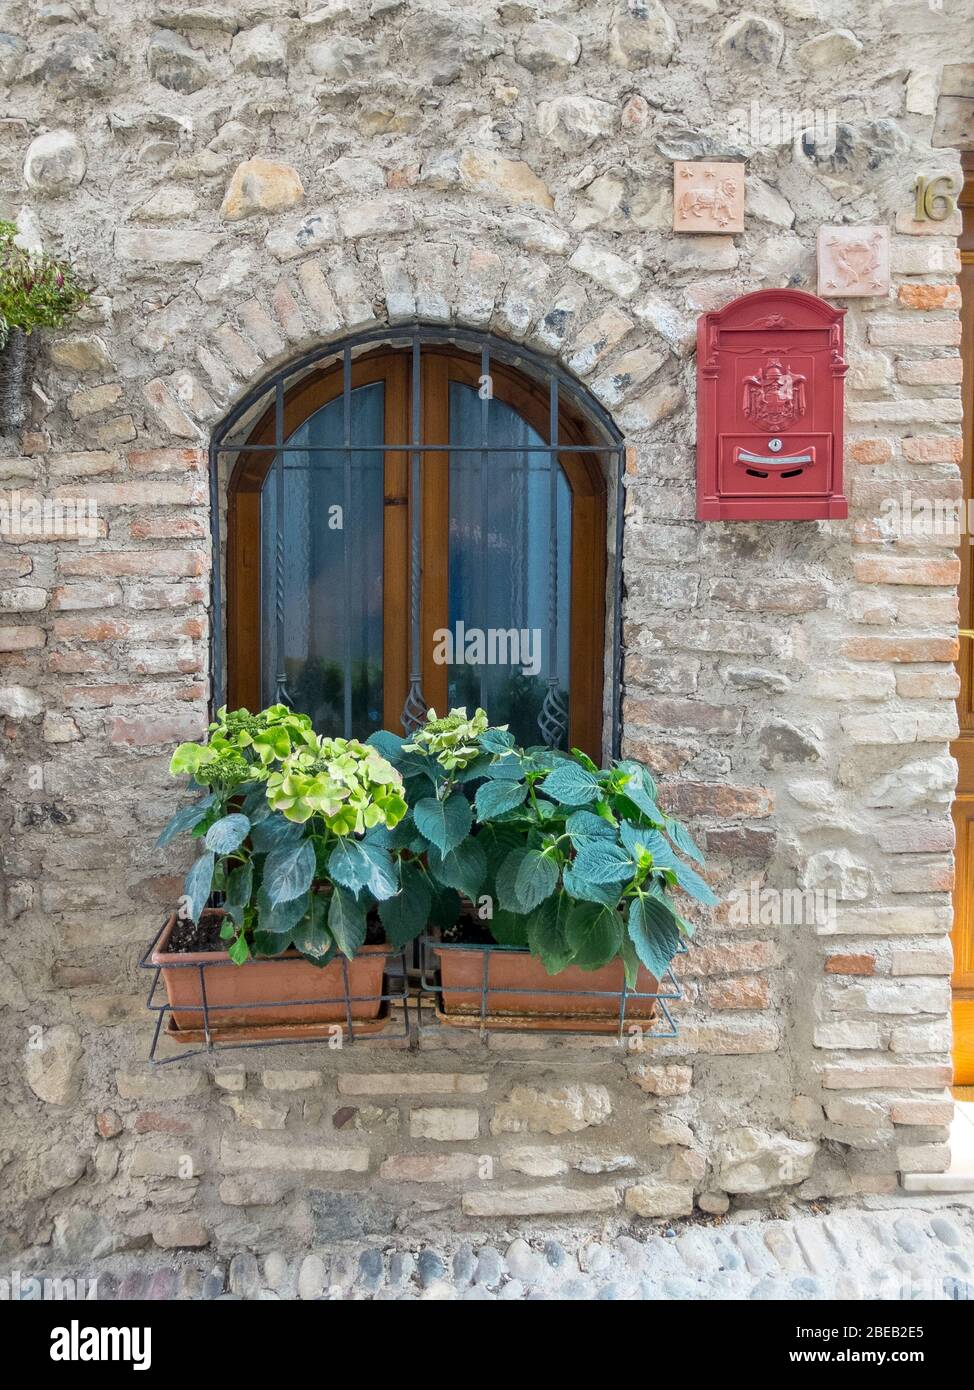 Malerisches Fenster in einem historischen, restaurierten Schlosskomplex in  Italien. Zwei Blumenkästen mit Hortensien und einem dunklen Gitter. Ein  roter Briefkasten fällt ins Auge Stockfotografie - Alamy